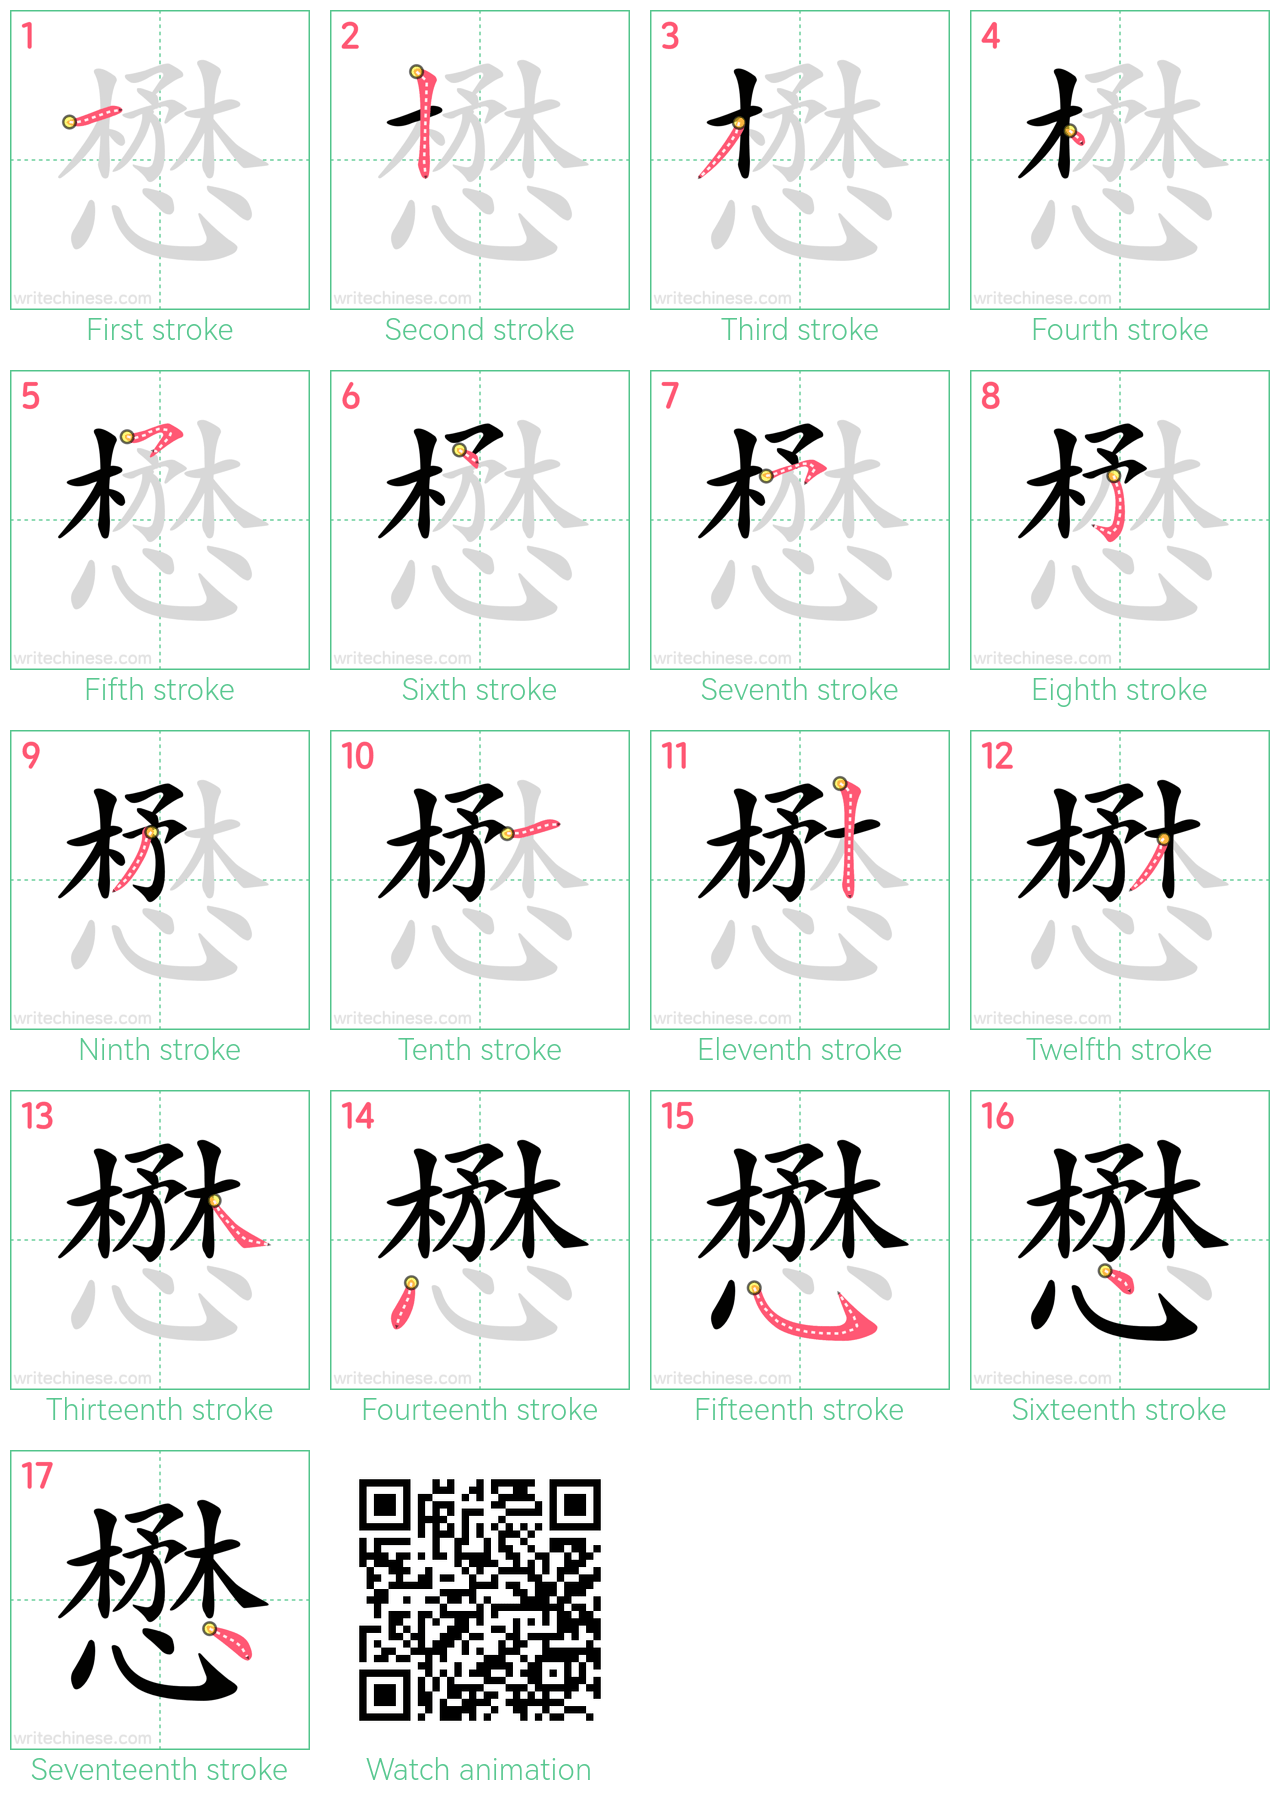 懋 step-by-step stroke order diagrams